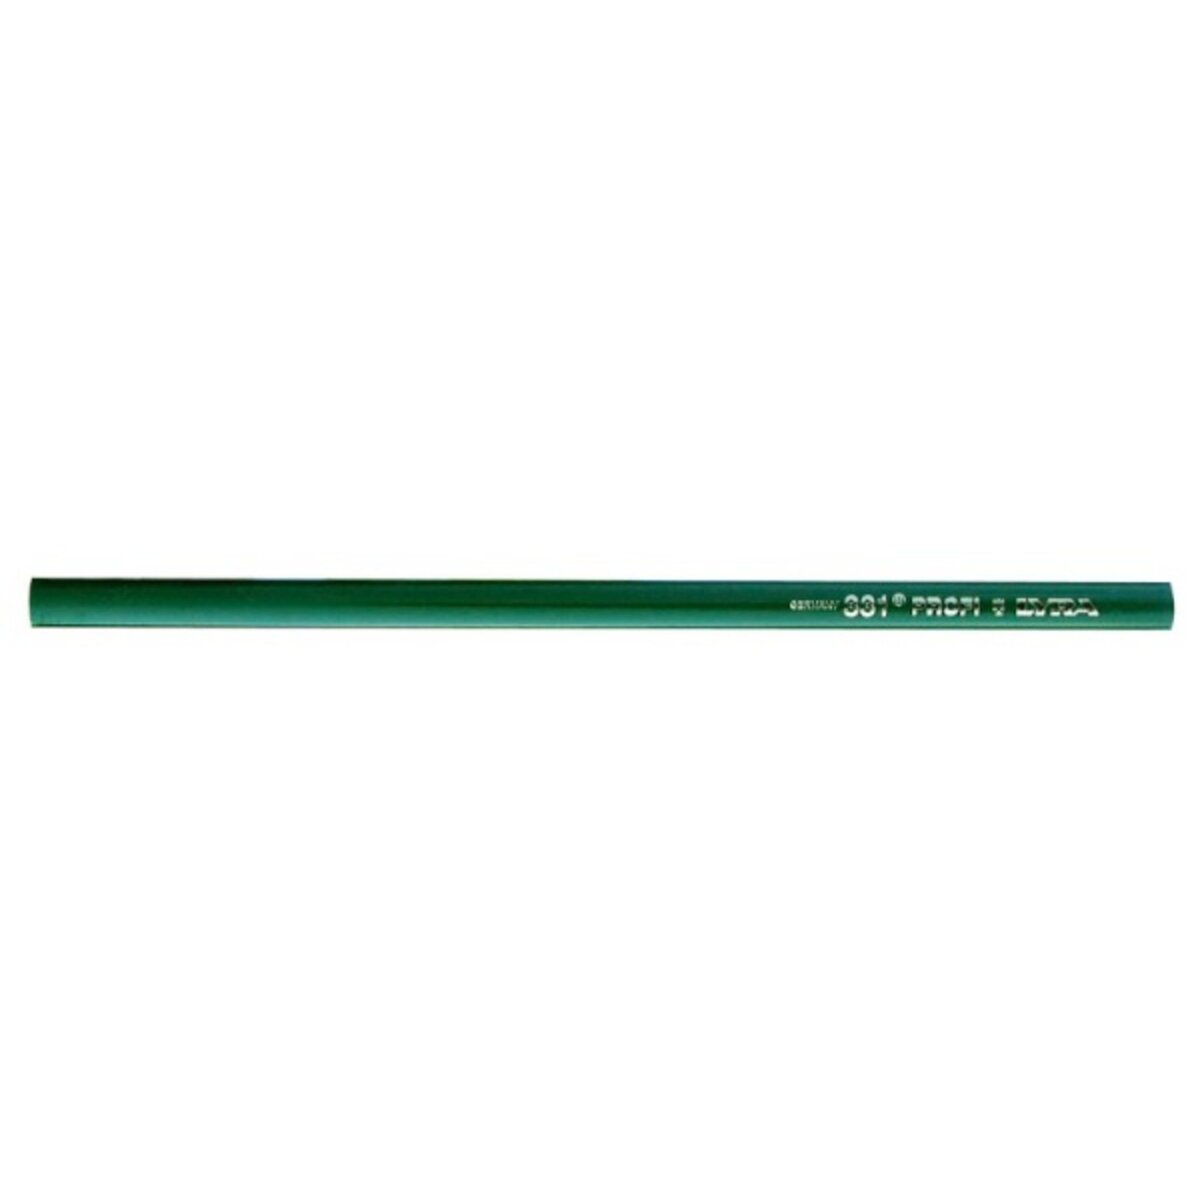 Lyra 1 crayon de maçon 30 cm